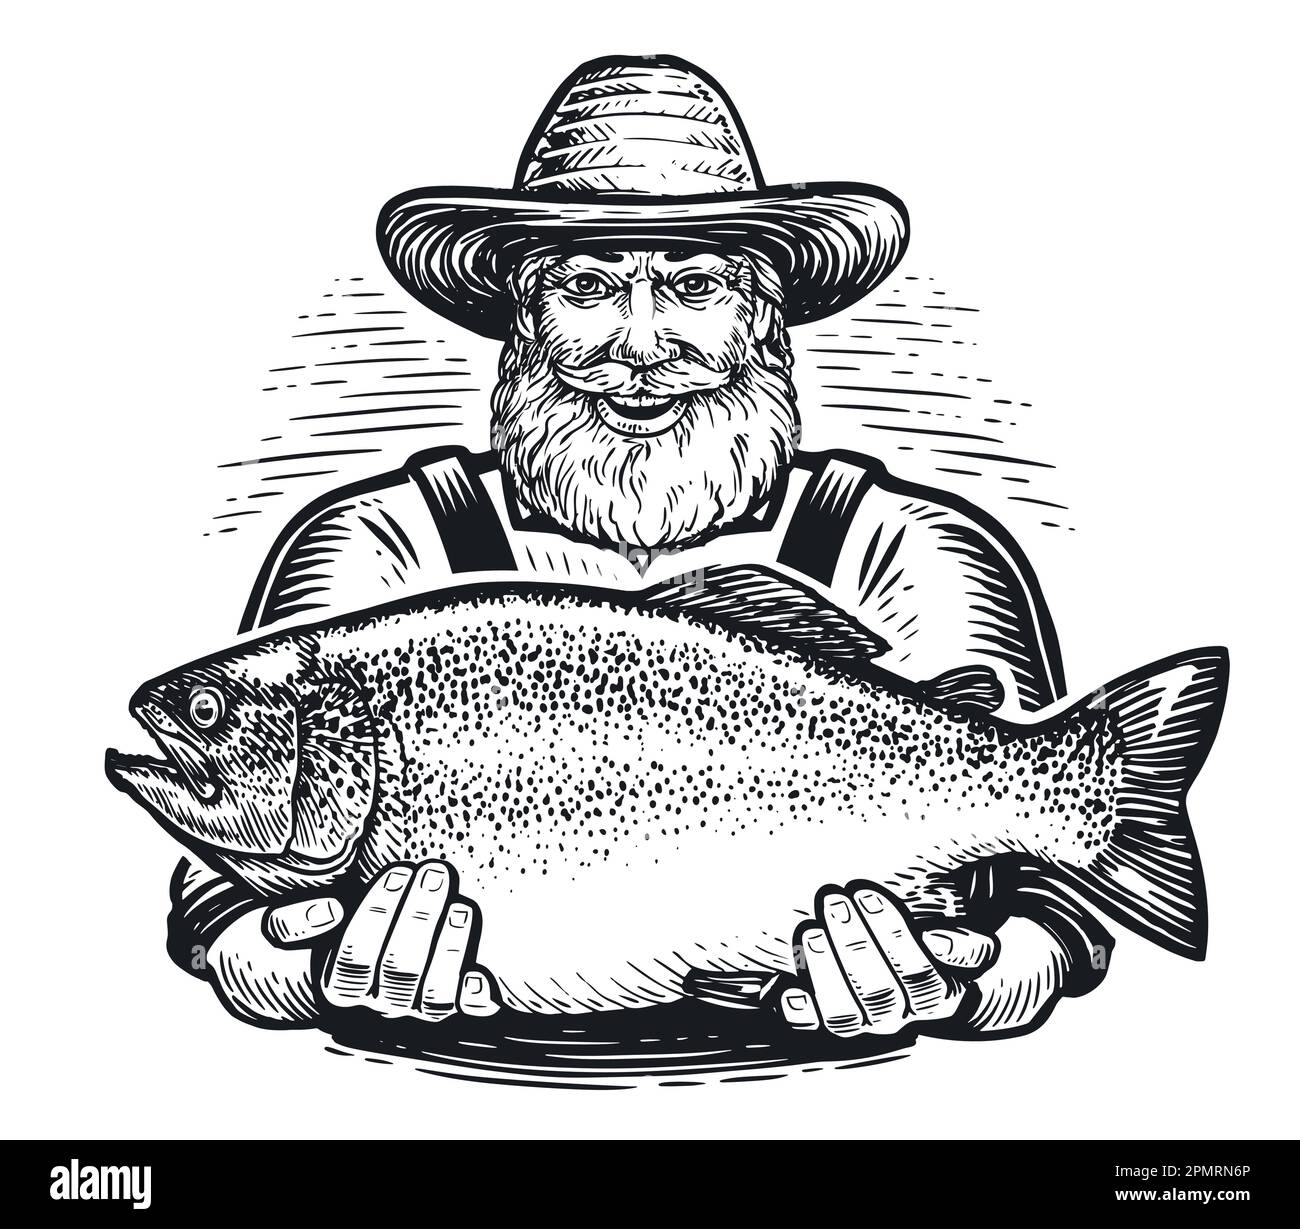 Joyeux vieux pêcheur avec de gros poissons pêchés. Concept de pêche. Illustration vectorielle d'esquisse dessinée à la main Illustration de Vecteur